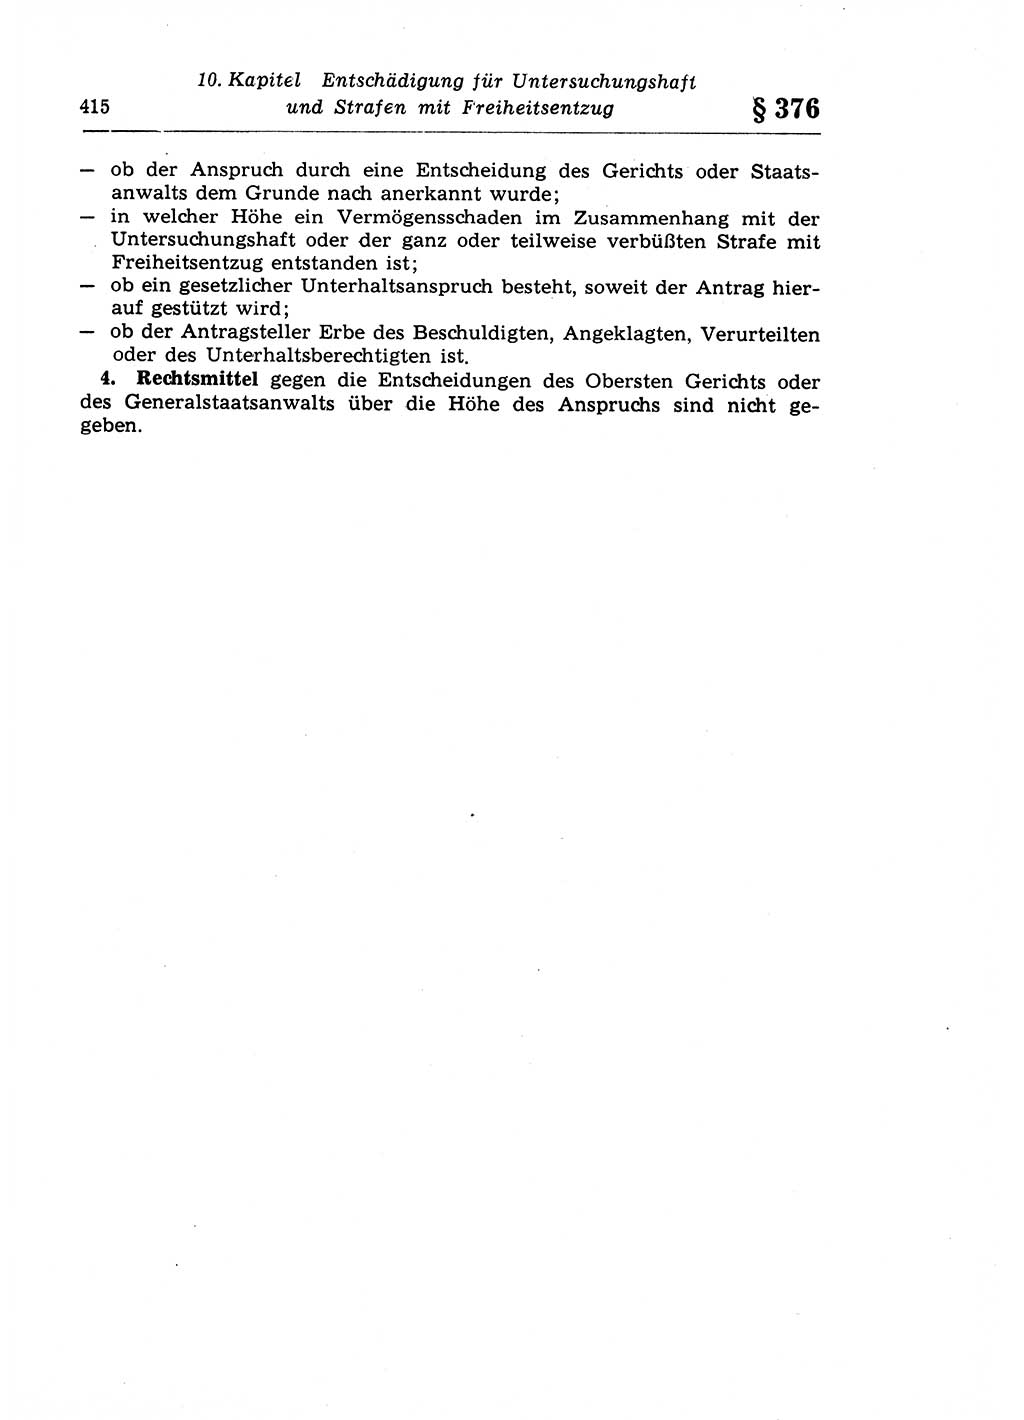 Strafprozeßrecht der DDR (Deutsche Demokratische Republik), Lehrkommentar zur Strafprozeßordnung (StPO) 1968, Seite 415 (Strafprozeßr. DDR Lehrkomm. StPO 19688, S. 415)